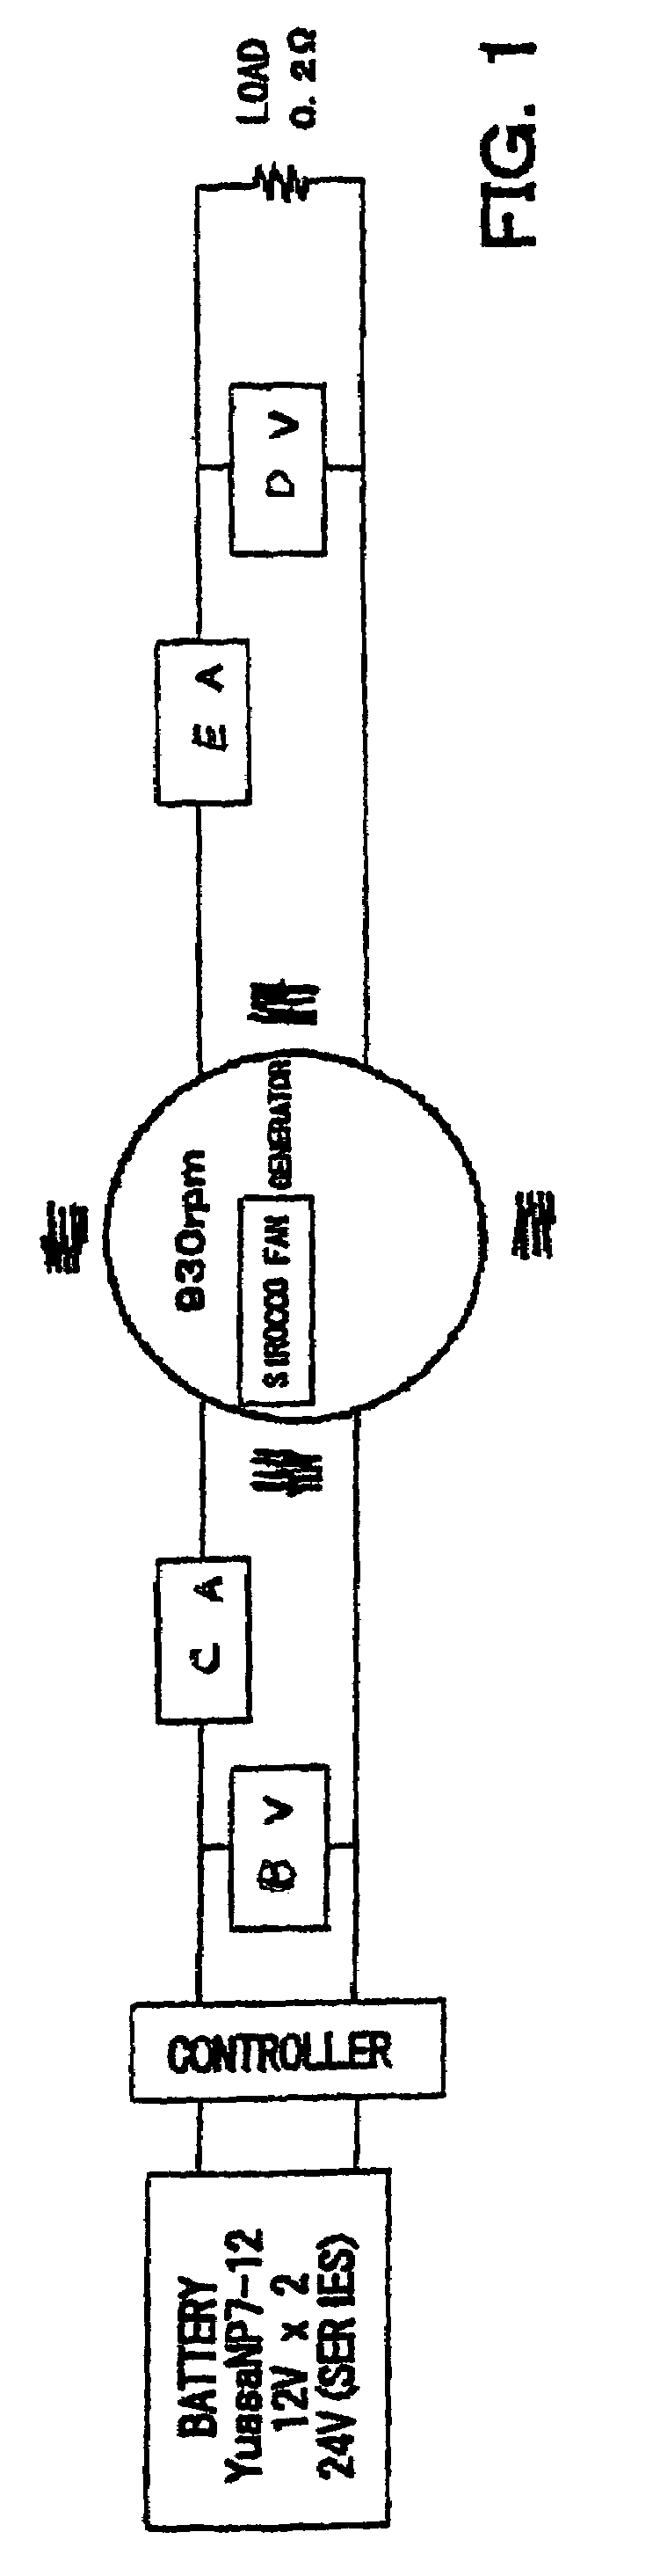 Magnetic rotating motor generator